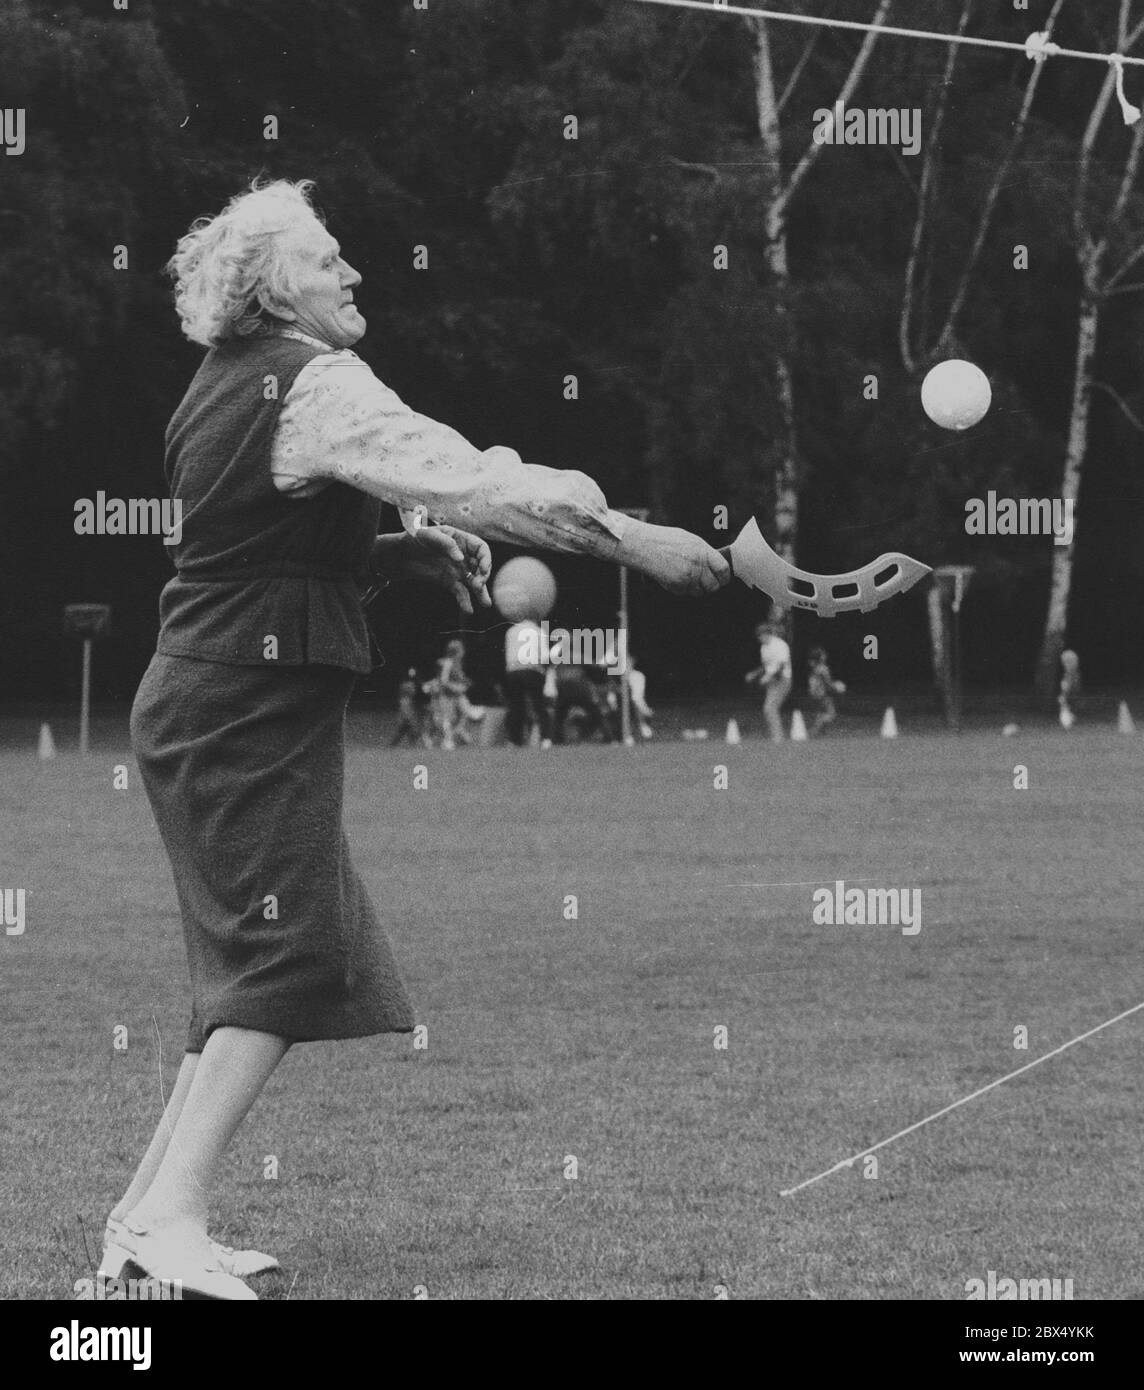 Berlino / anziani / sport / 31.5.1984Spielfest della federazione sportiva nel parco Rehberge, matrimonio:una vecchia signora in azione// tempo libero / [traduzione automatizzata] Foto Stock